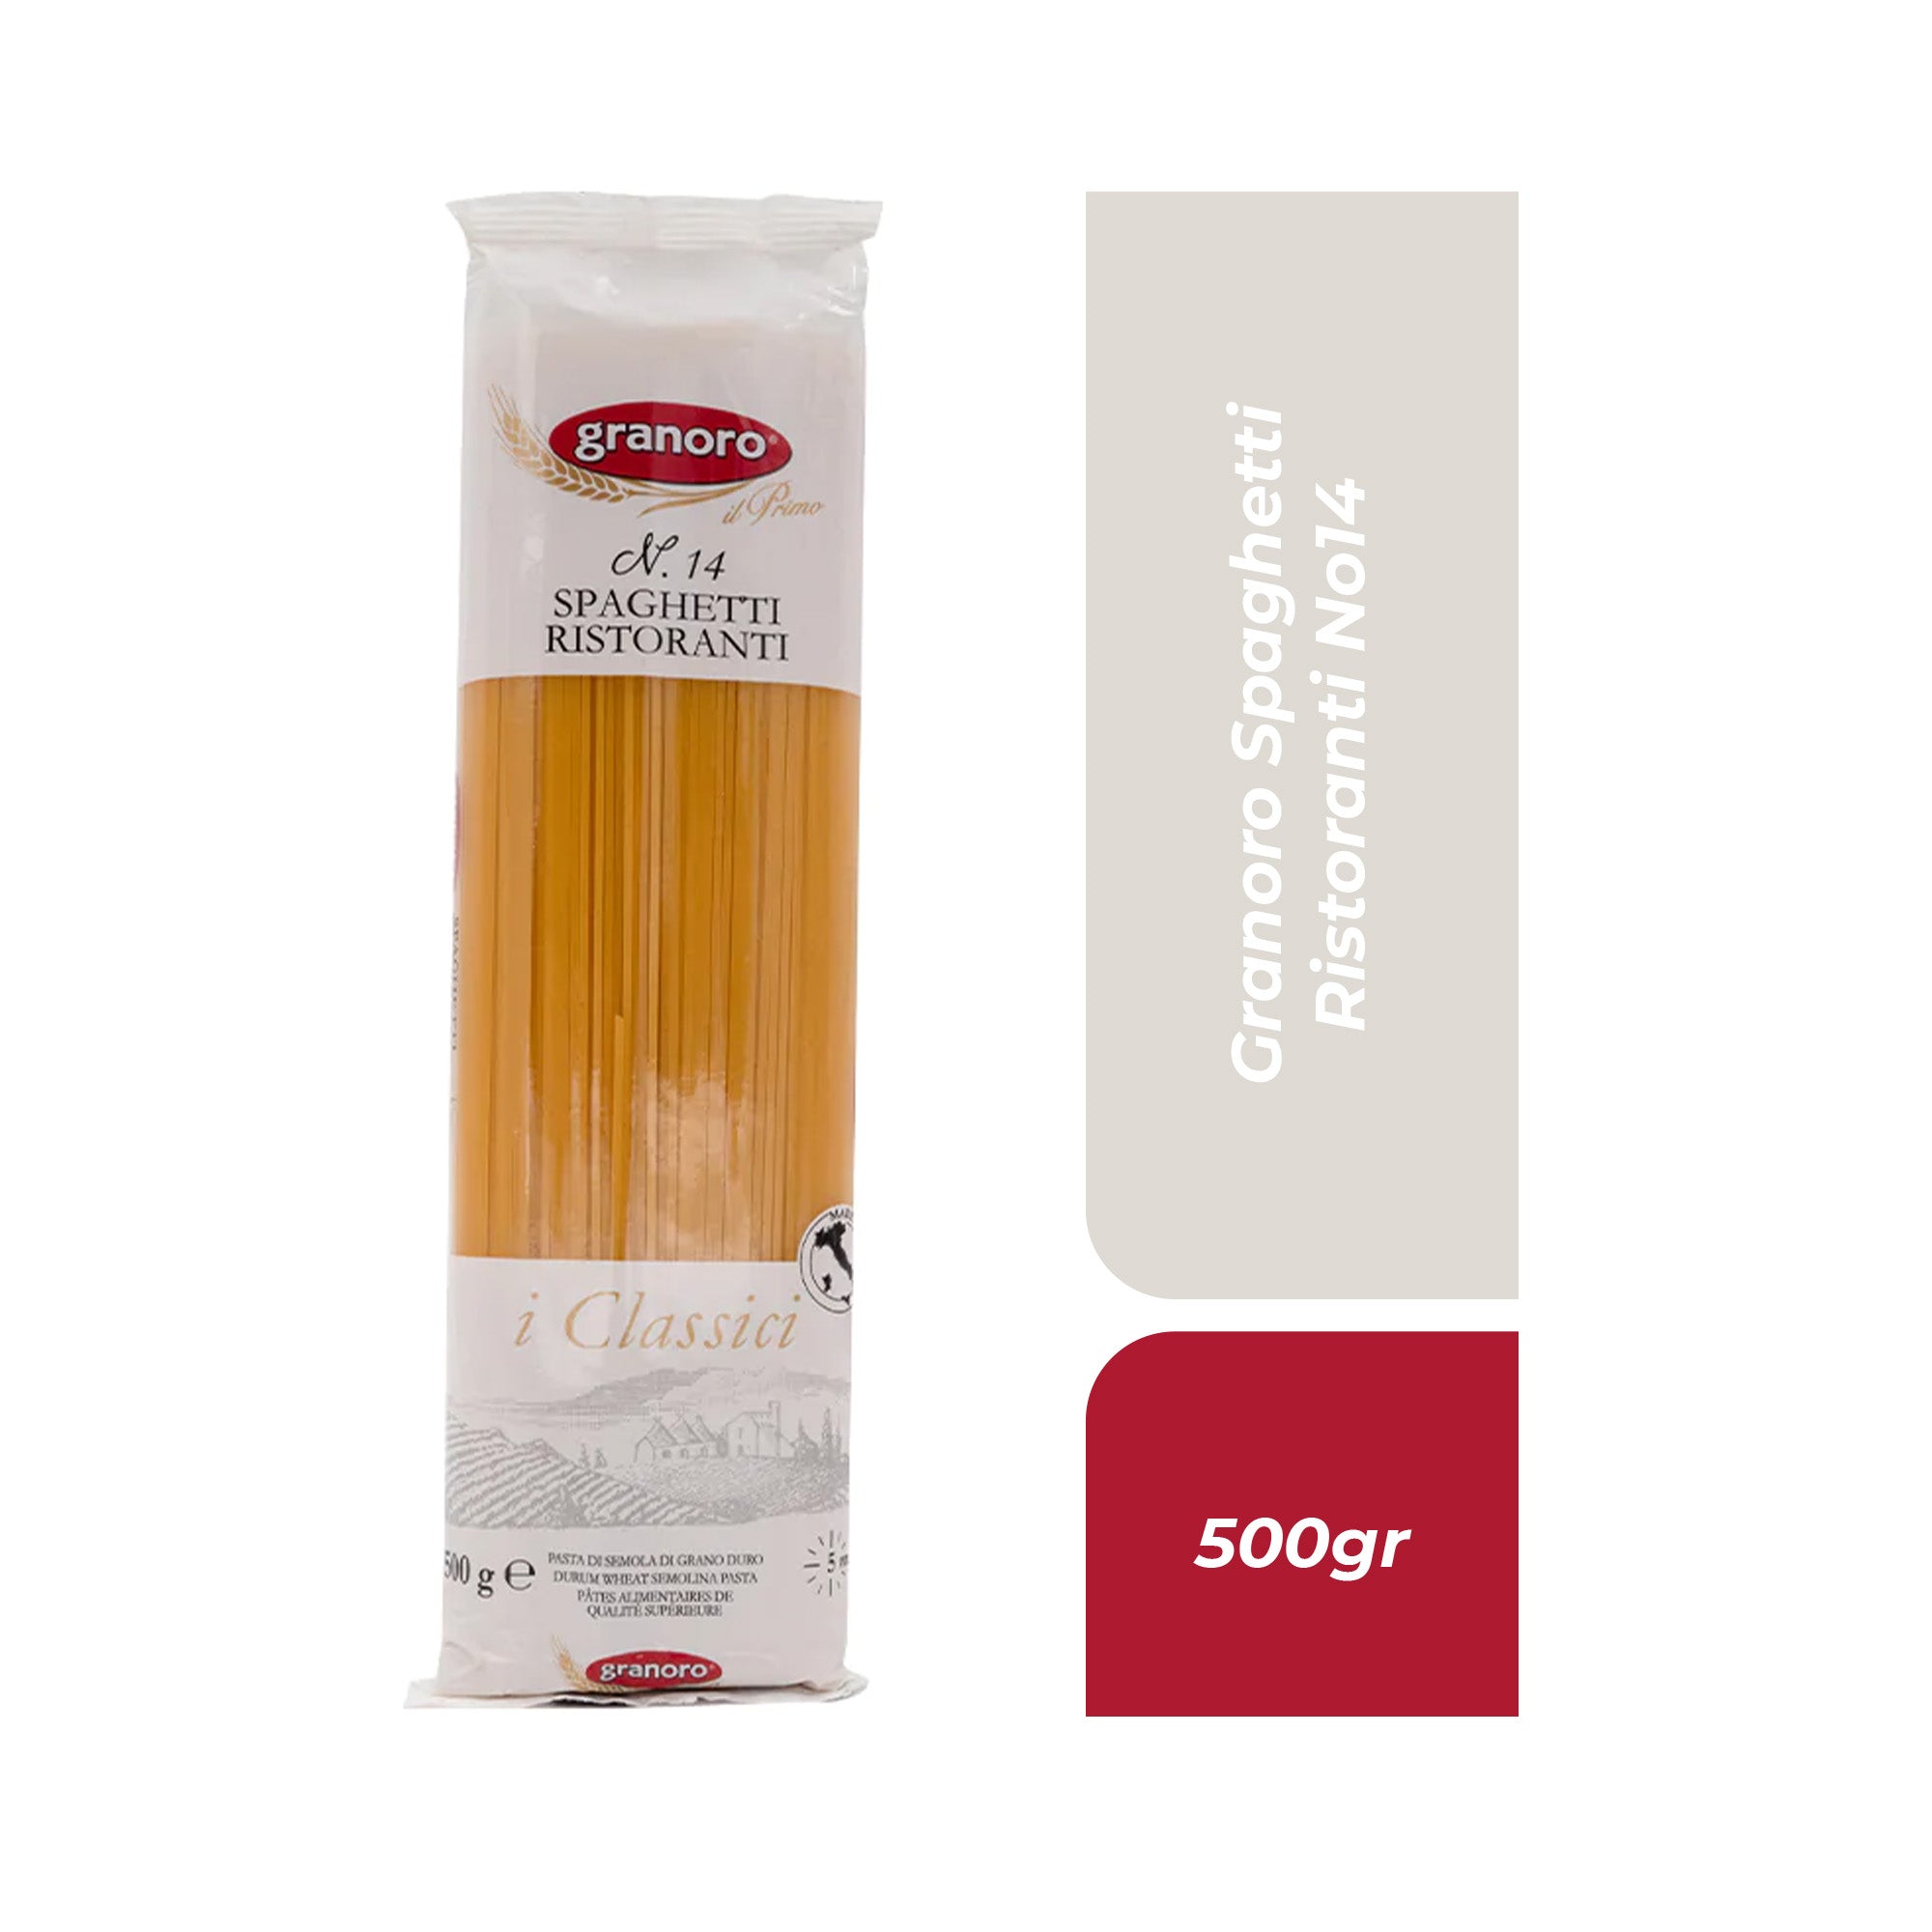 Granoro Spaghetti Ristoranti No14 500gr.